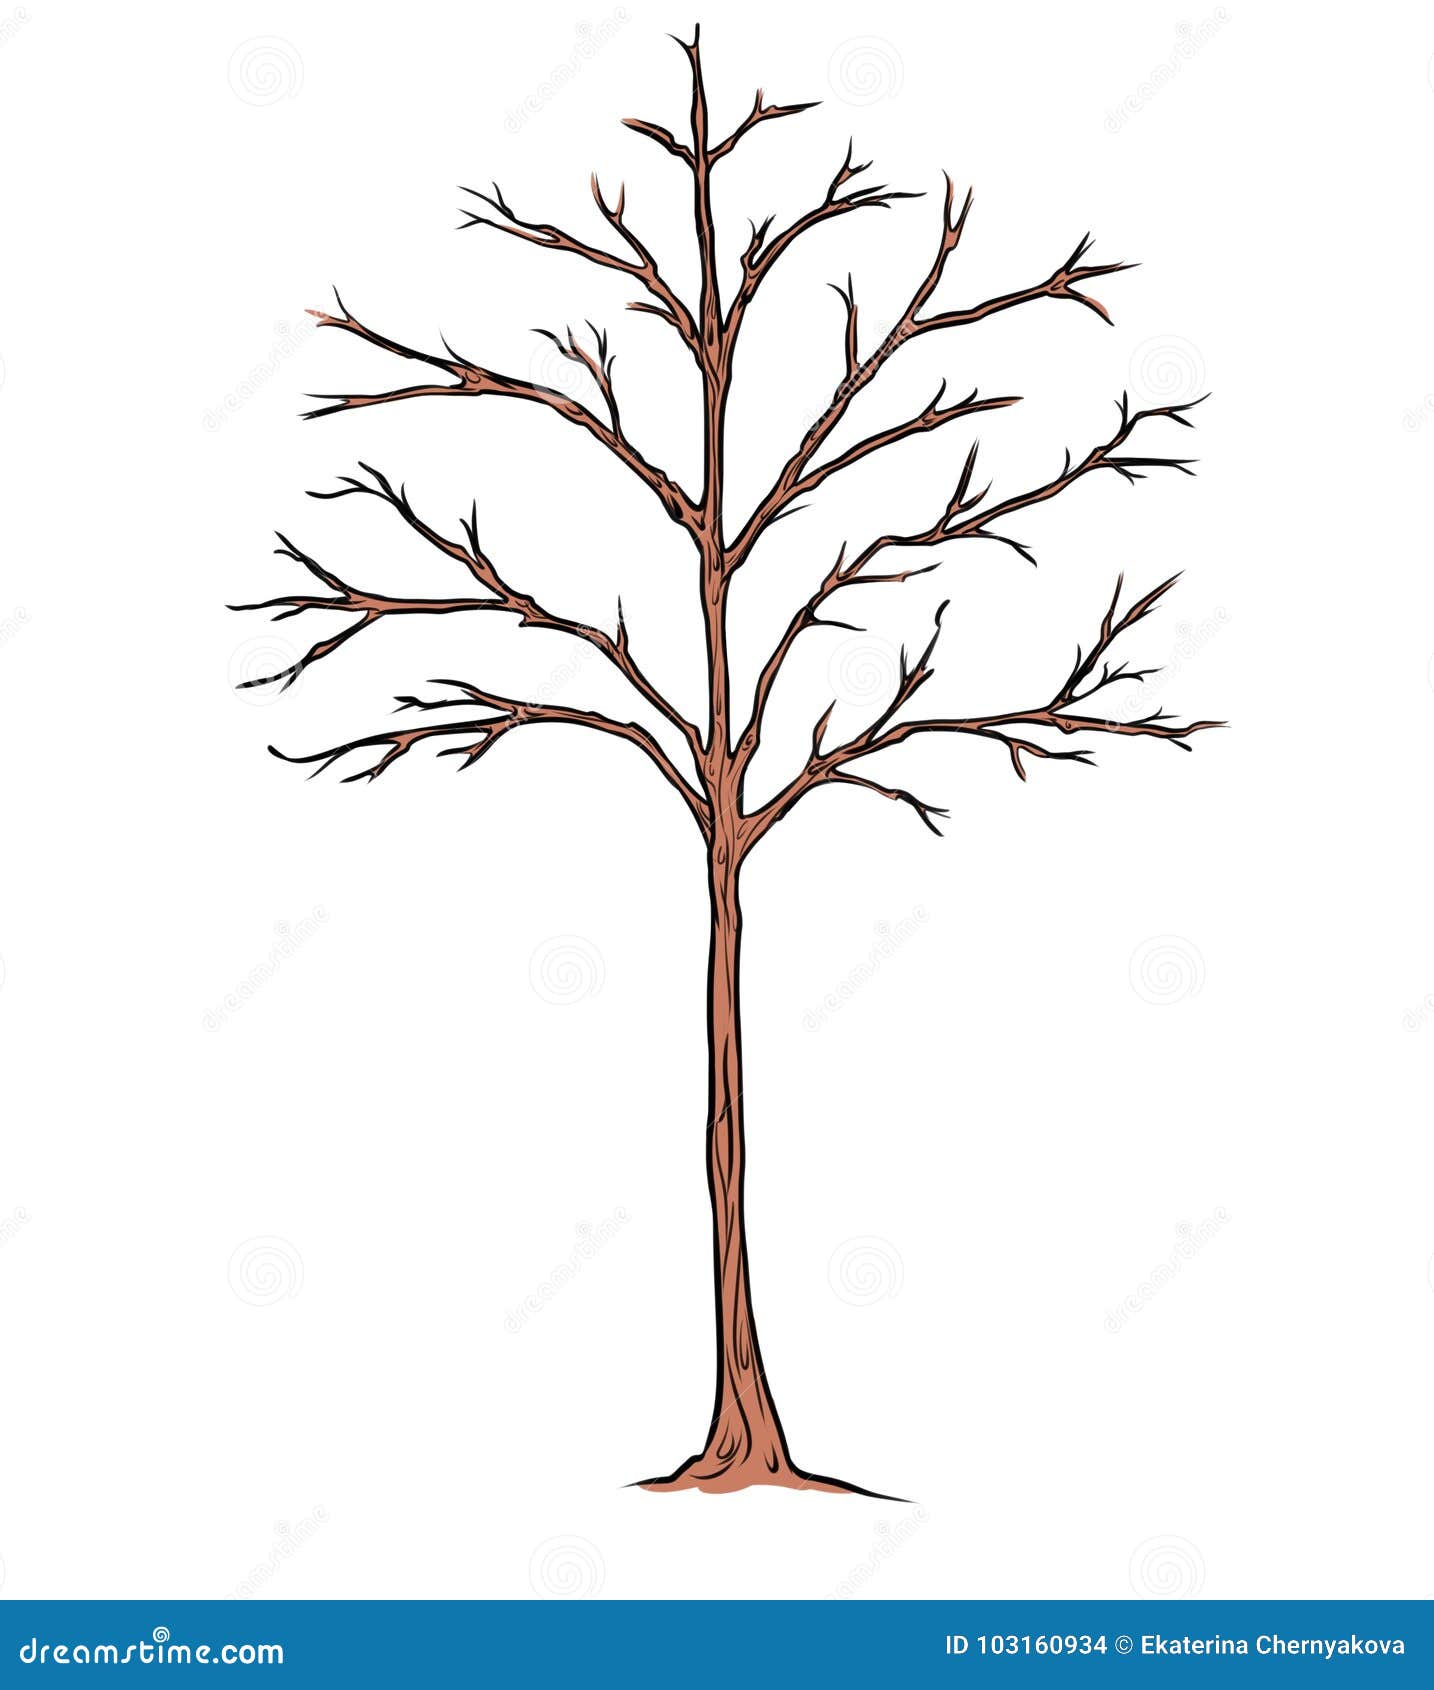 drought tree cartoon 